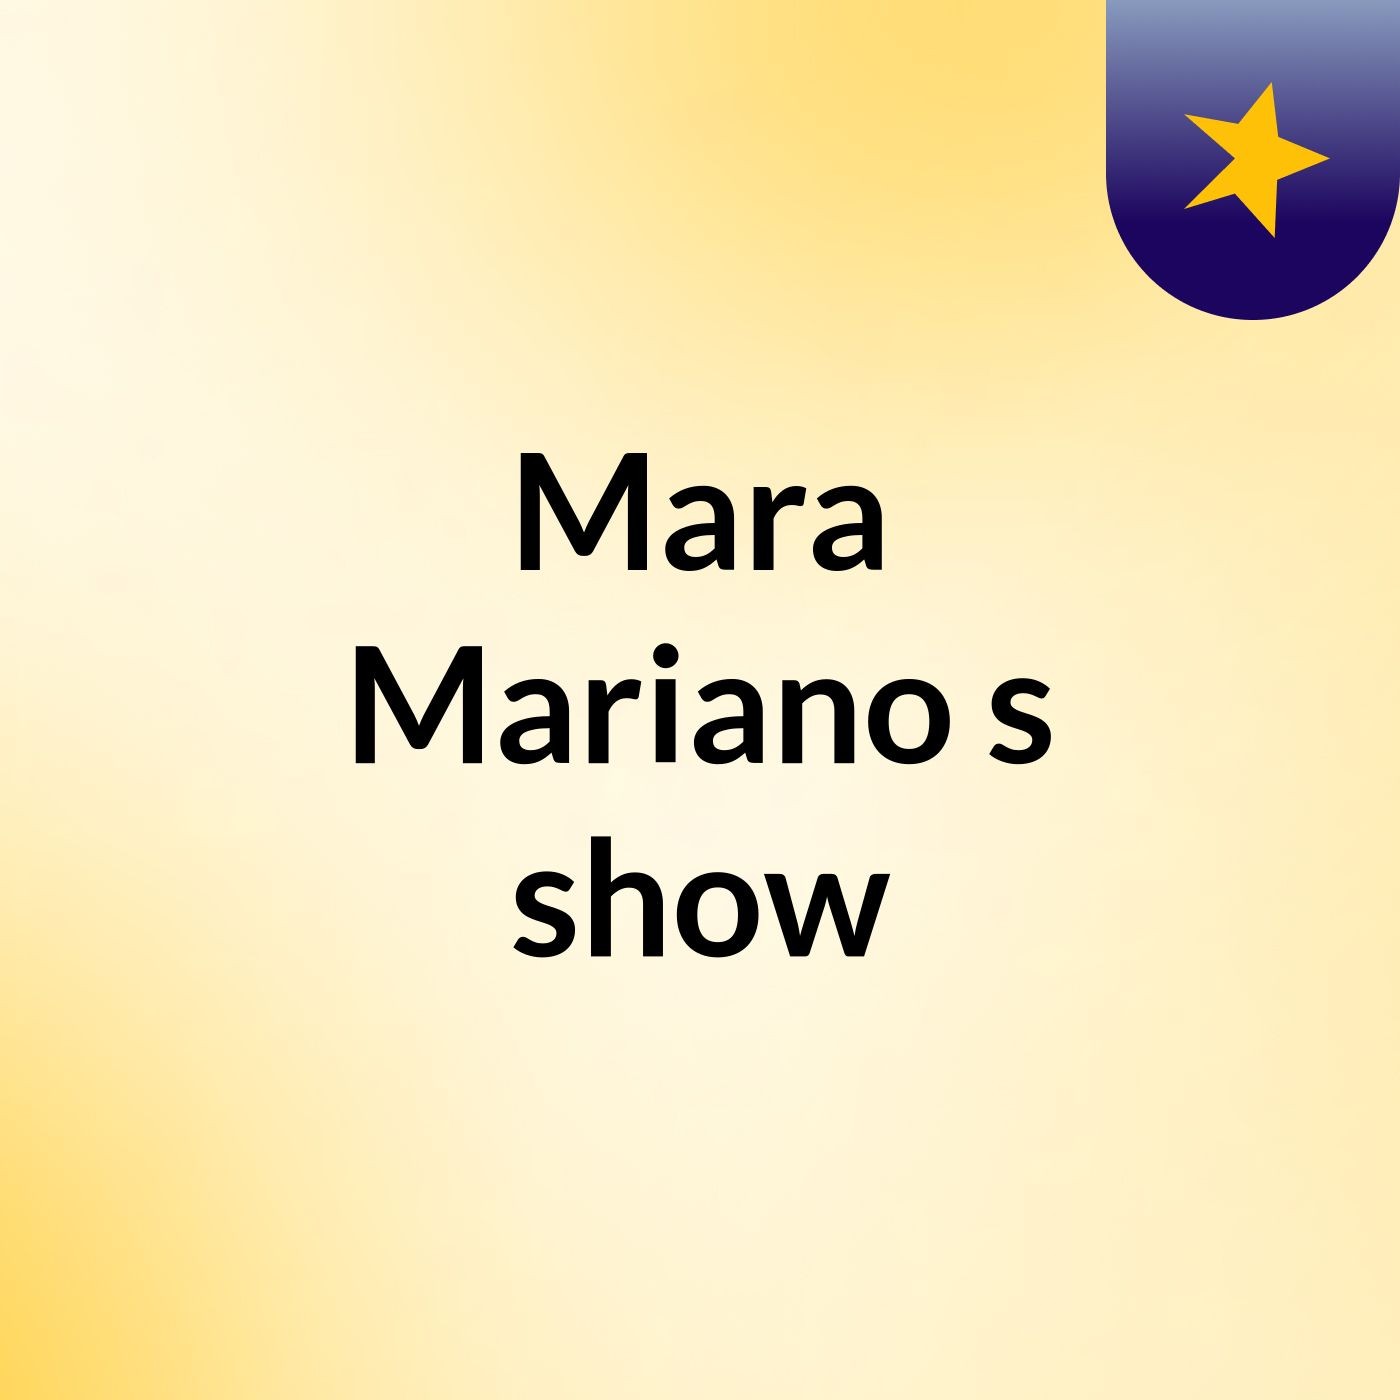 Mara Mariano's show